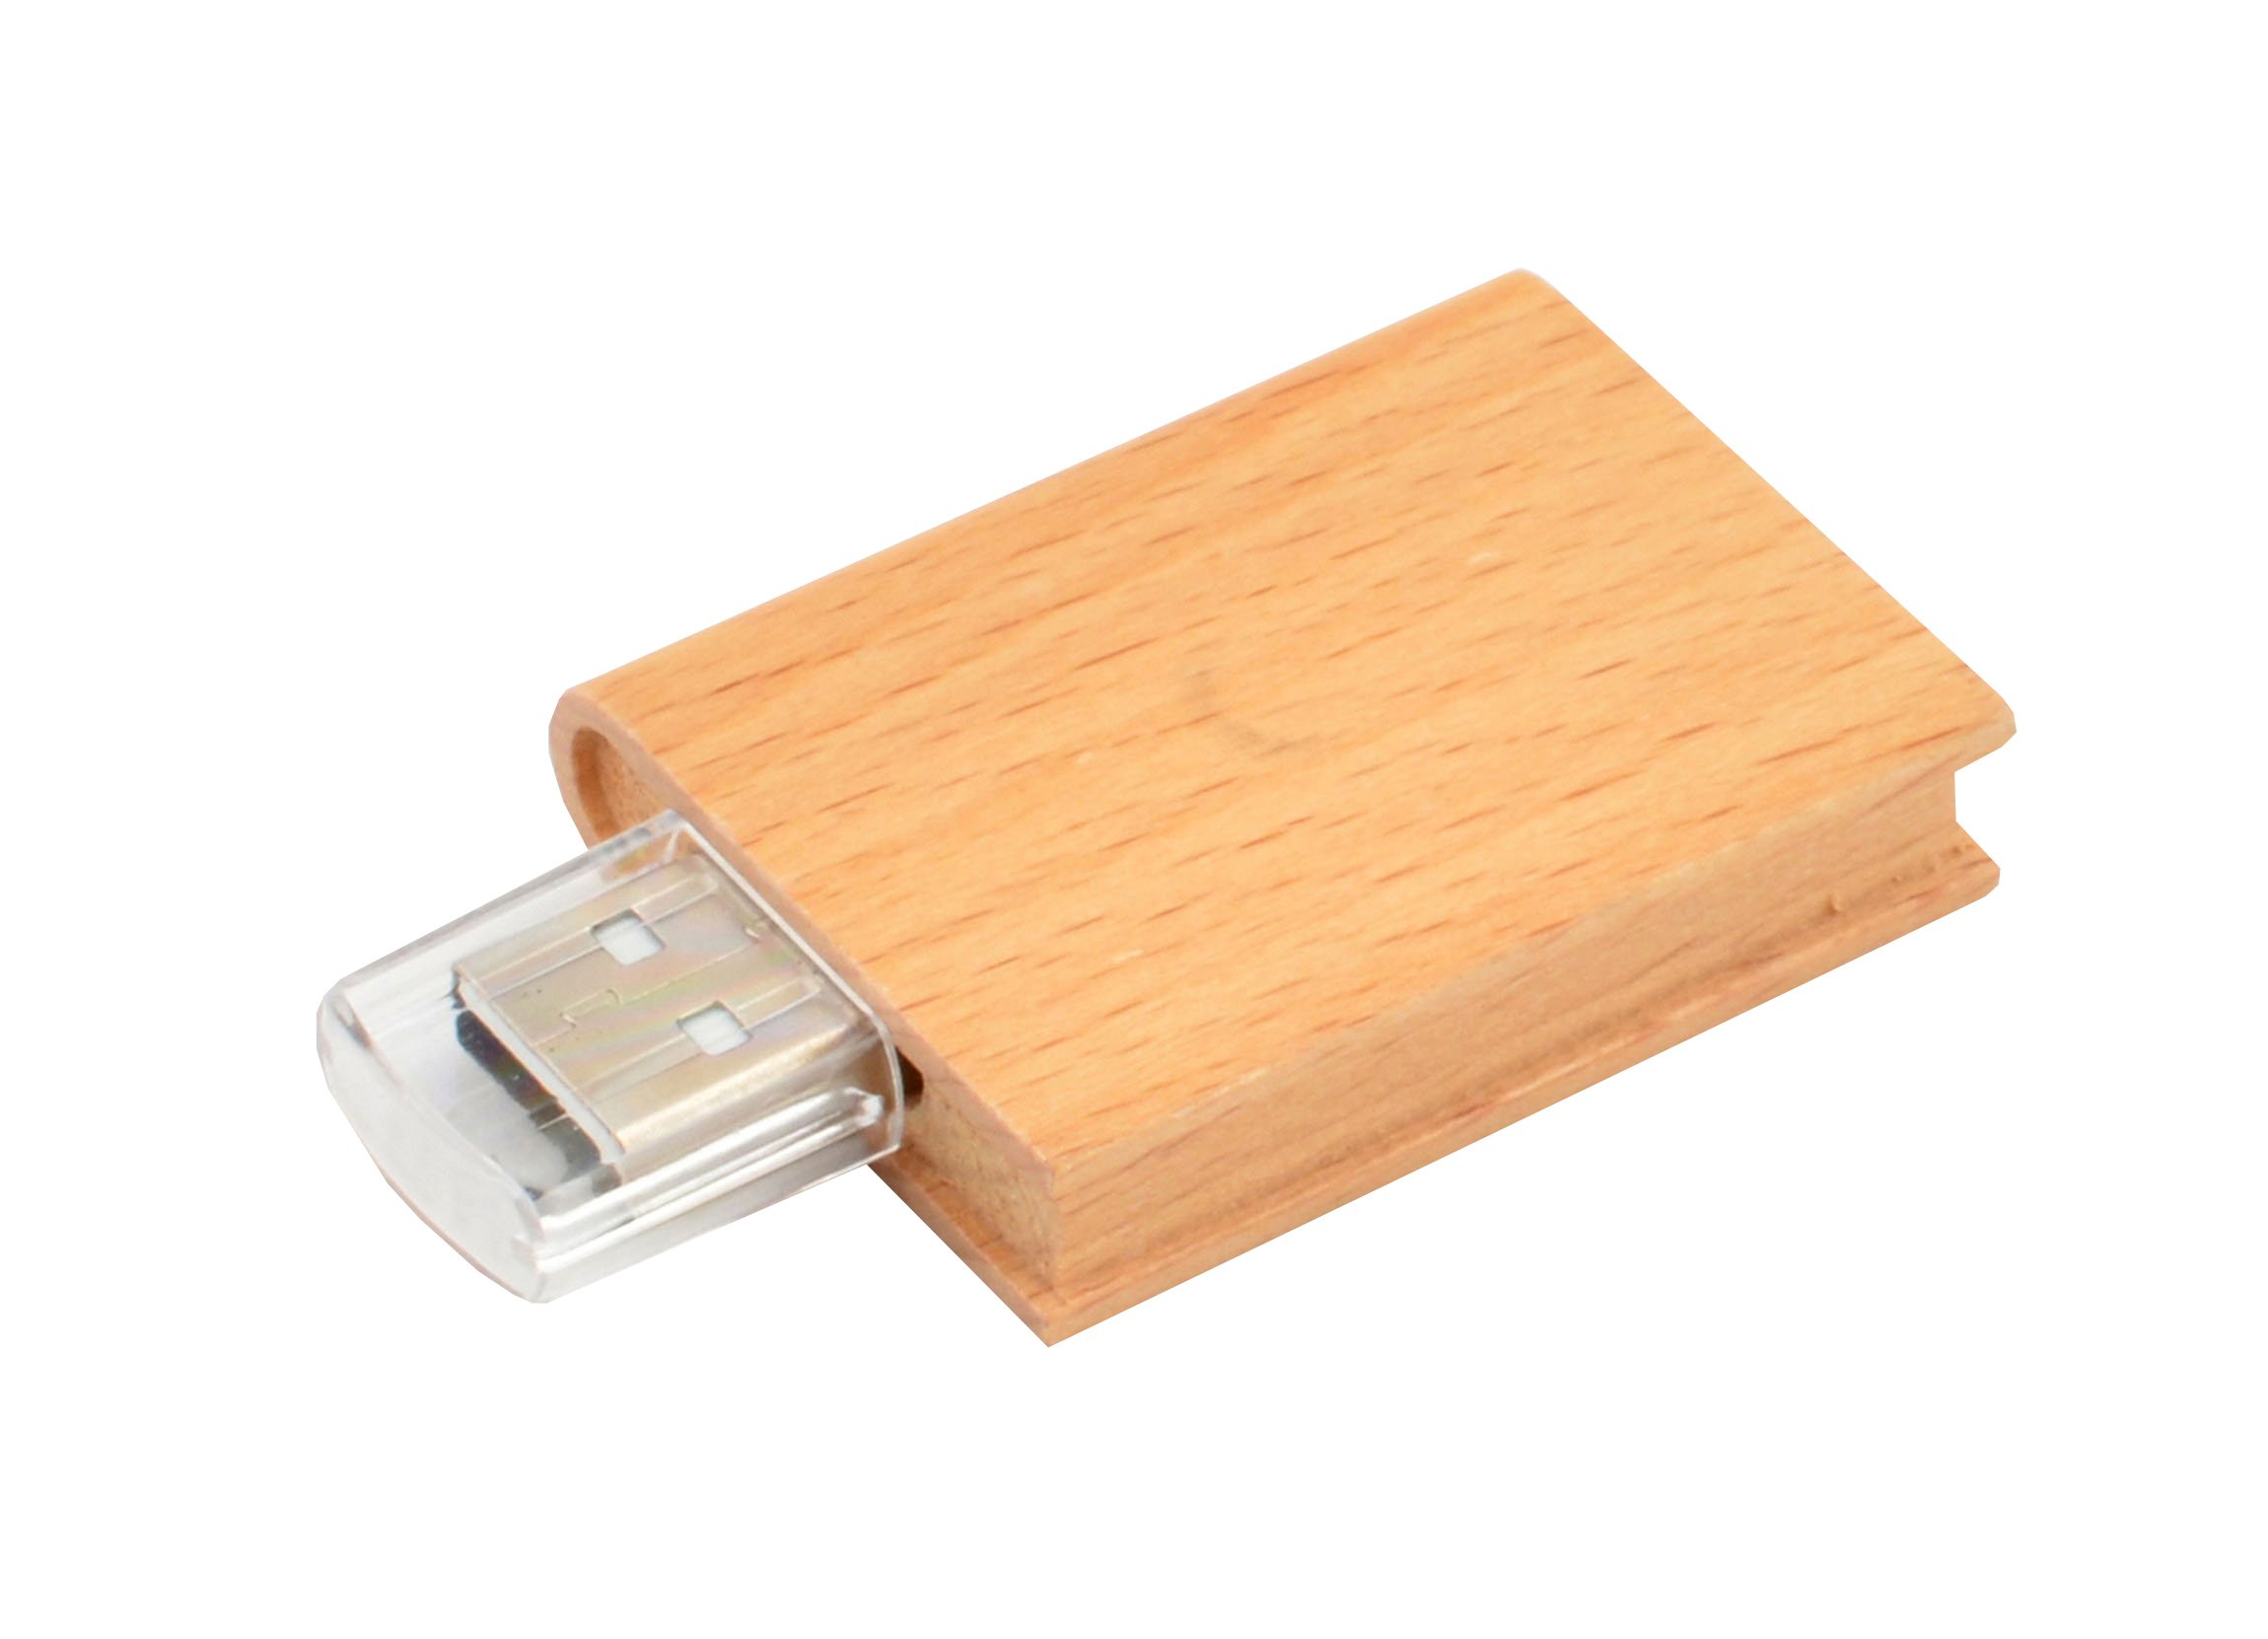 Unusual USB flash drive PRATTS wood